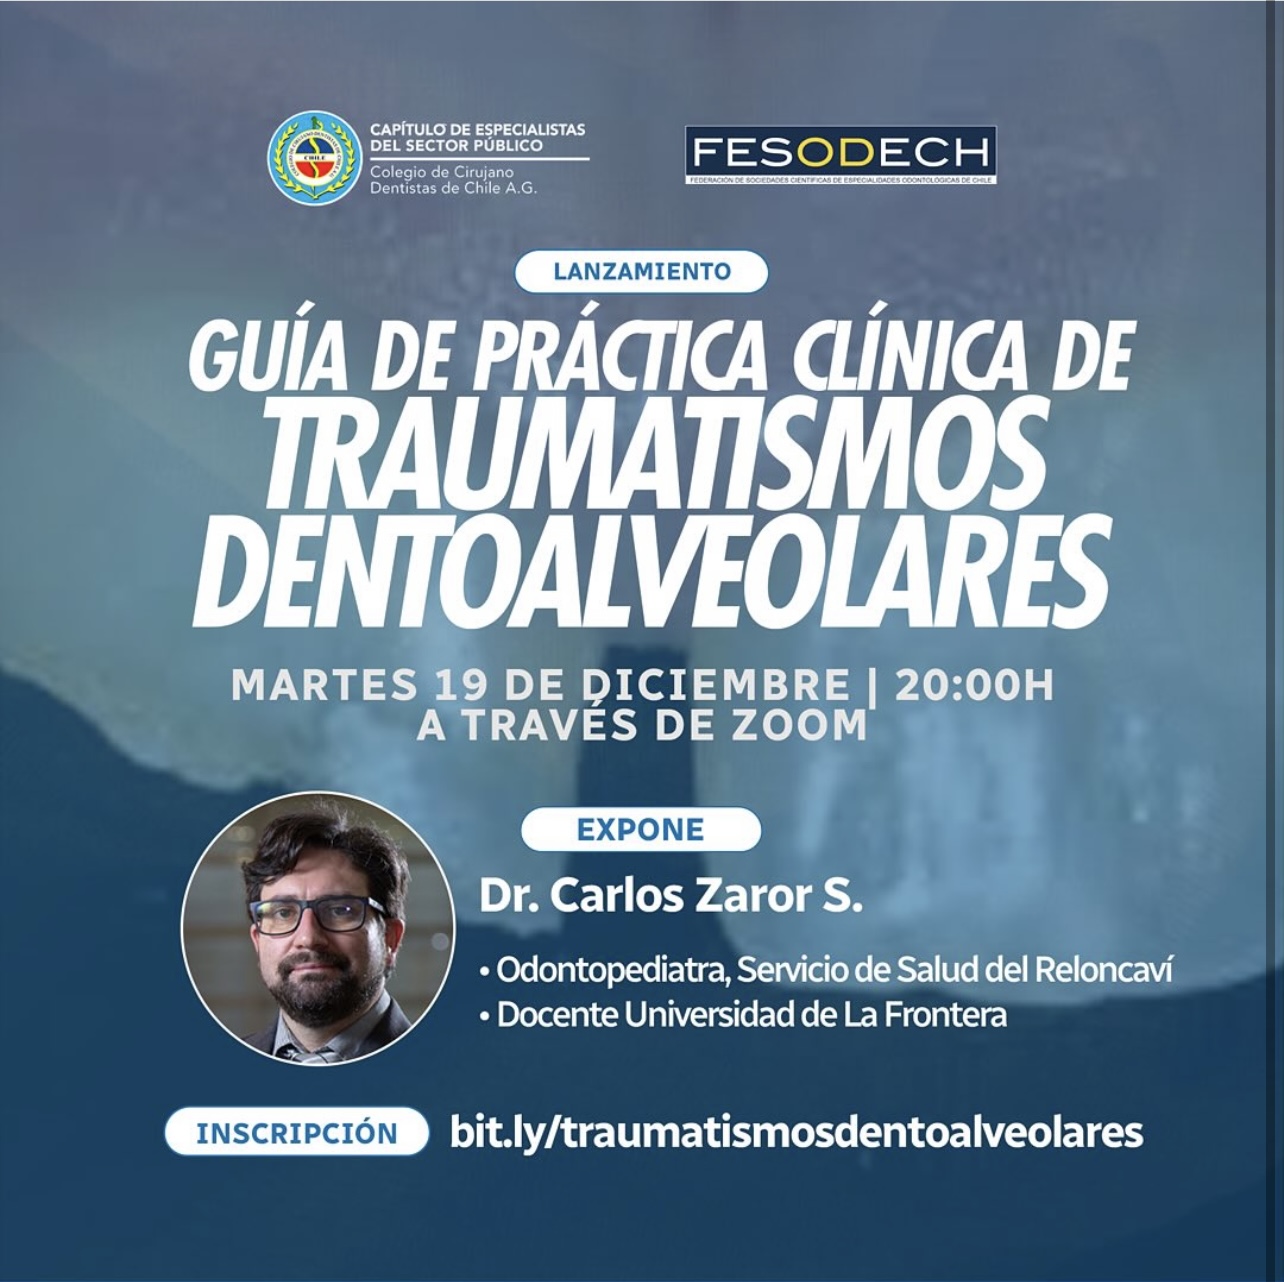 Lanzamiento de la Guía de Práctica Clínica de Traumatismos Dentoalveolares